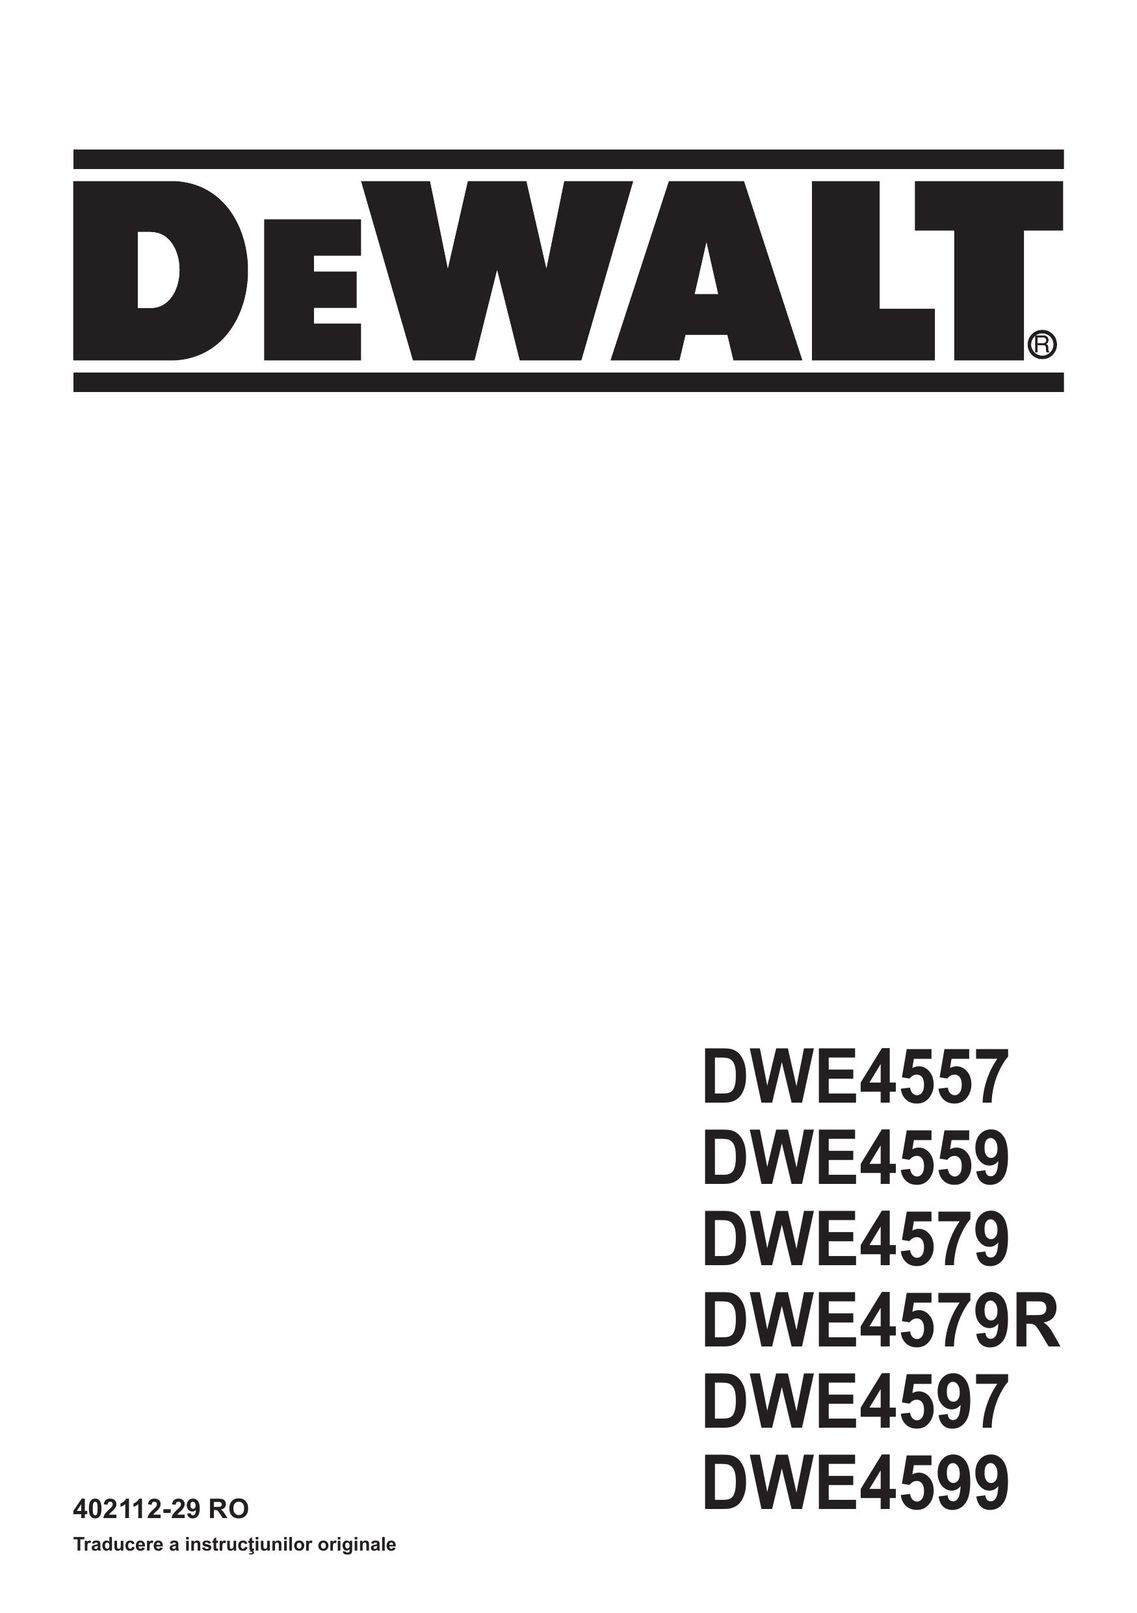 DeWalt DWE4597N Grinder User Manual